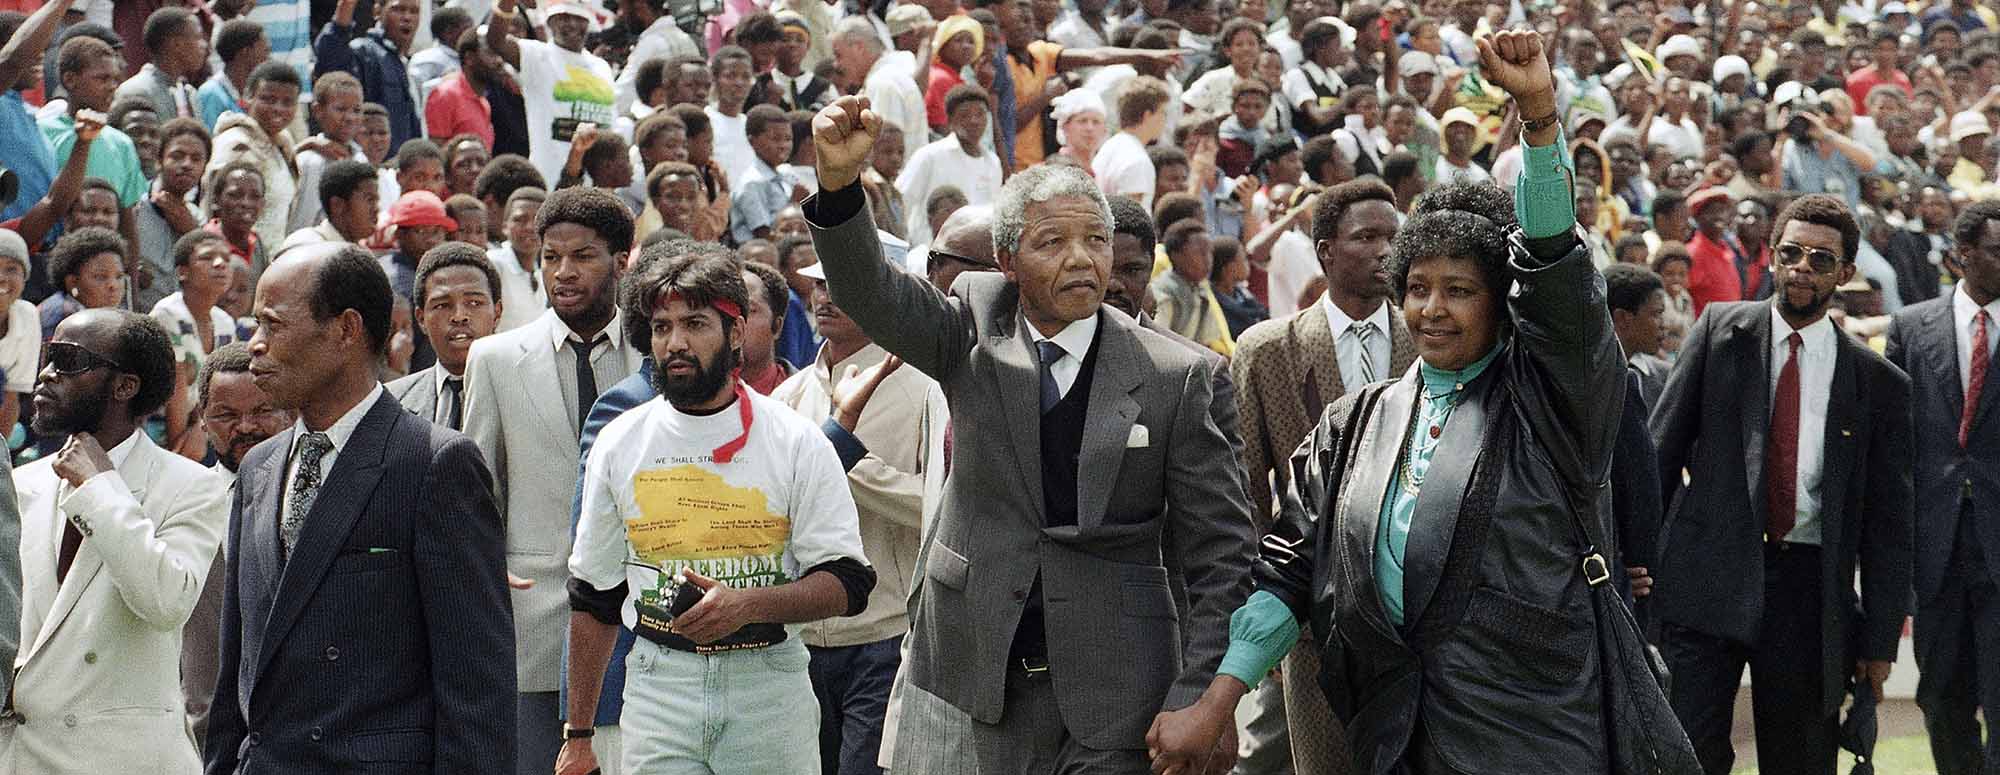 13.02.1990 נלסון וויני מנדלה, בעצרת ביוהנסברג לאחר שחרורו של מנדלה מהכלא (צילום: AP Photo/Udo Weitz, File)